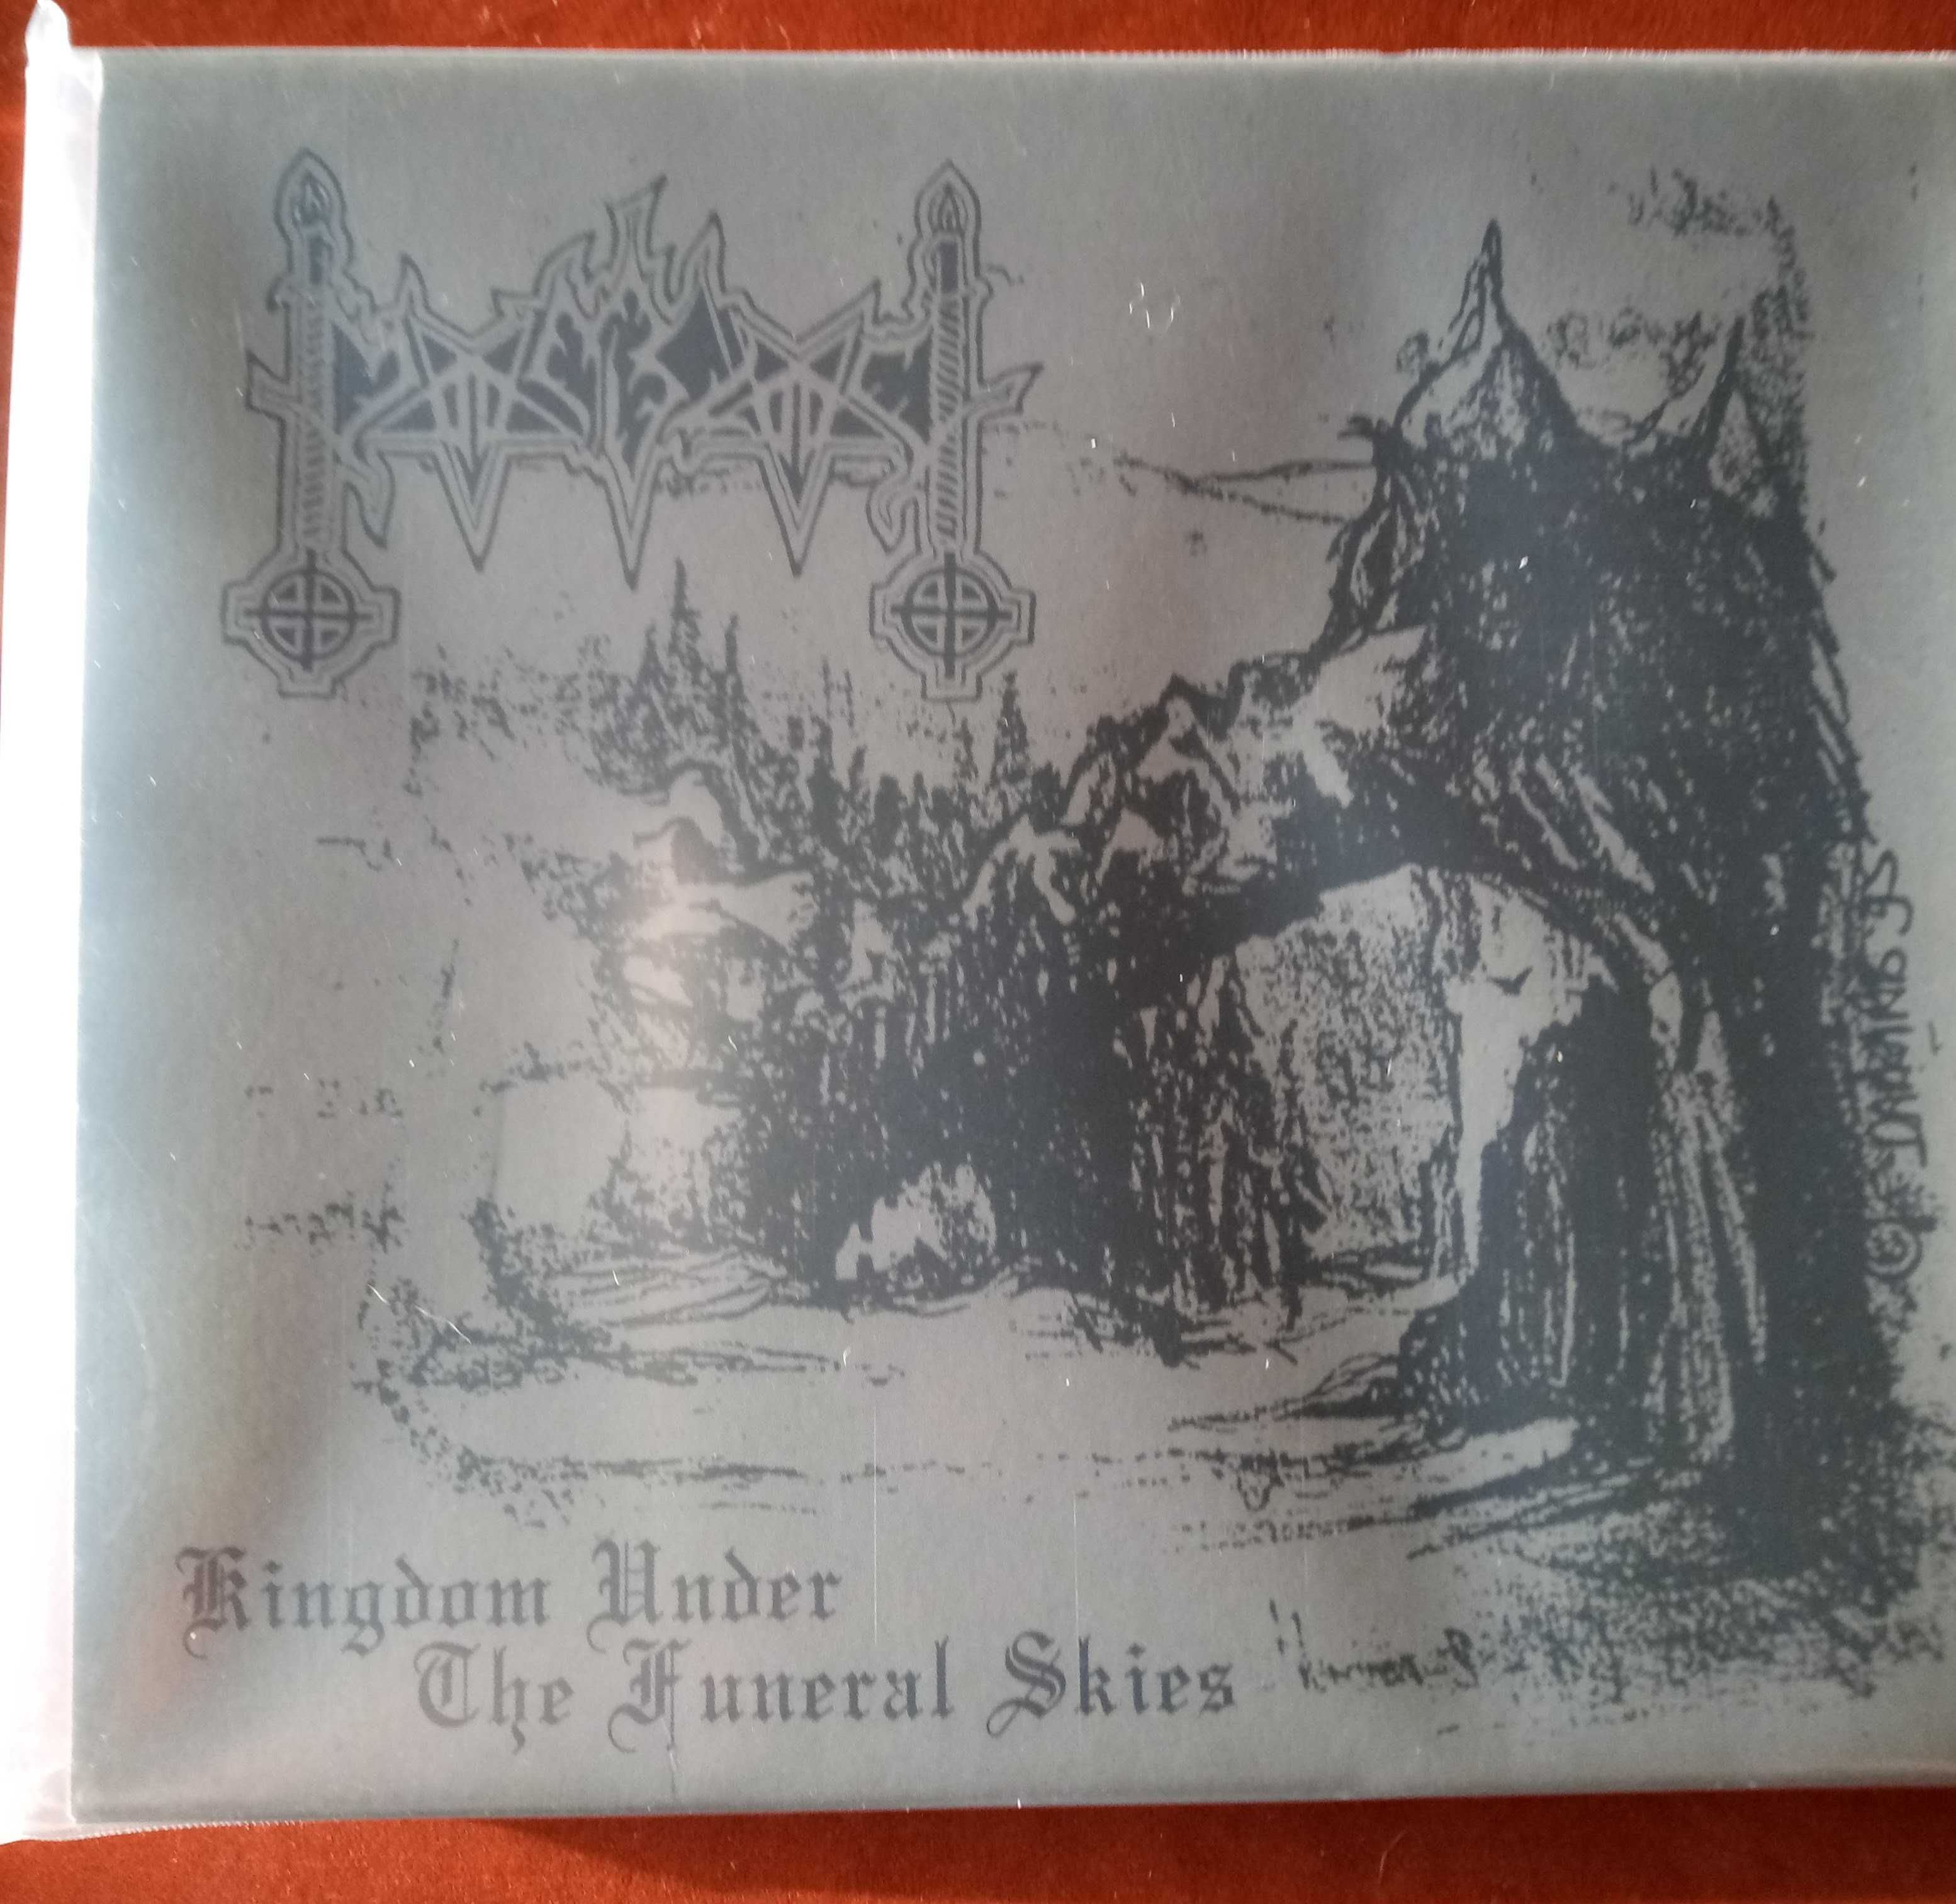 Moonblood - cds black metal